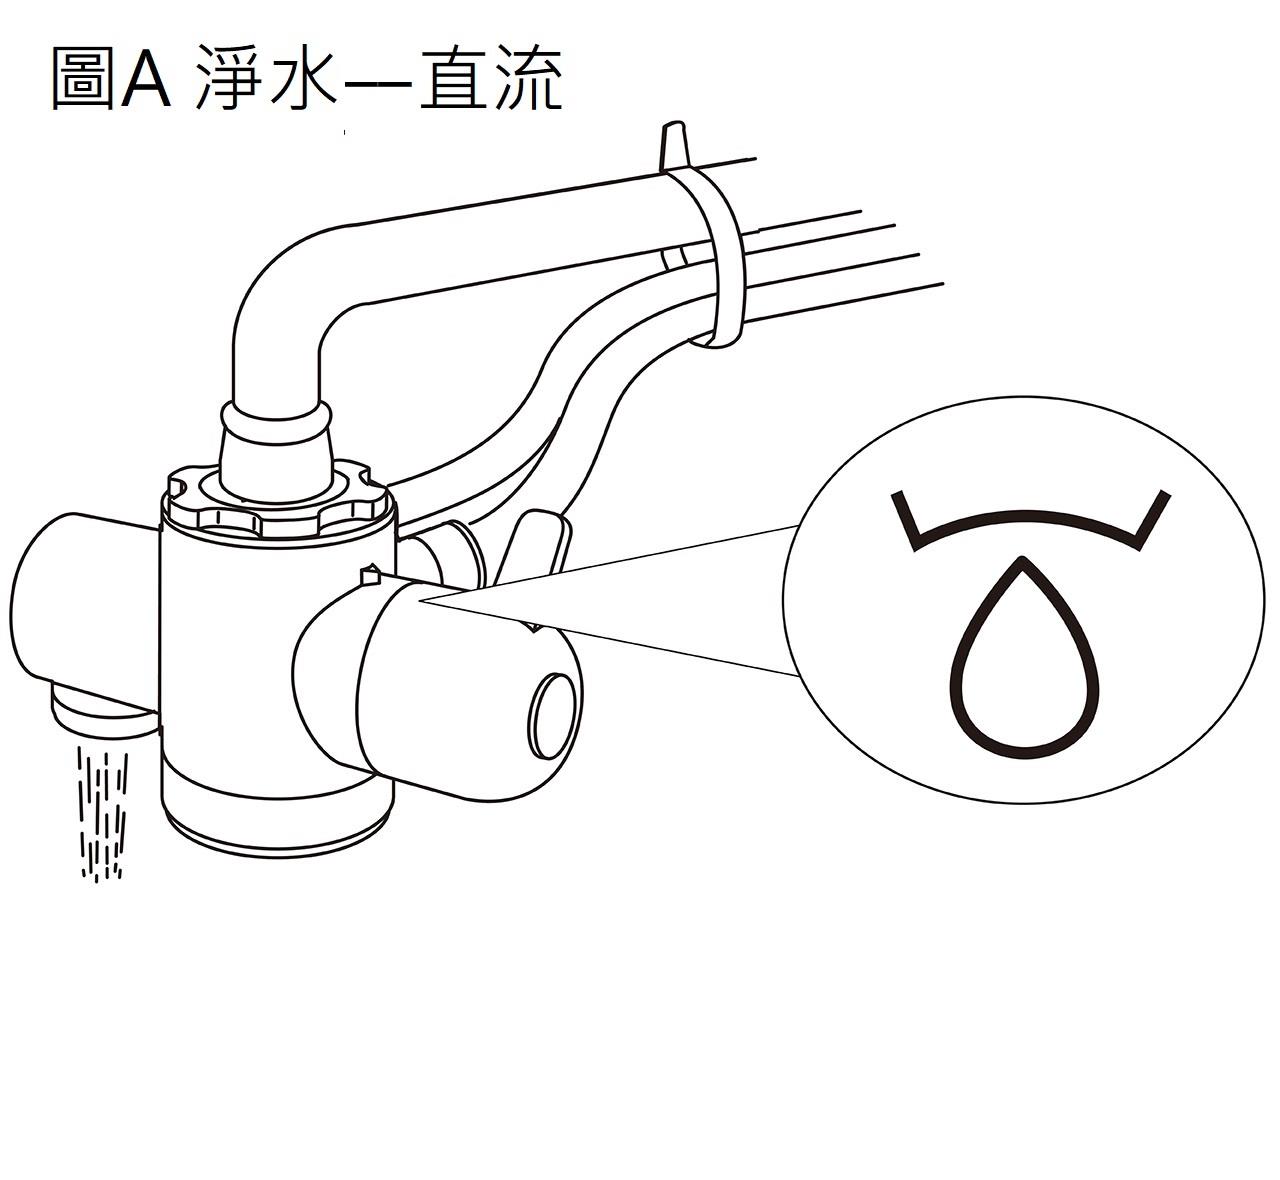 益之源淨水器分流器安裝教學-內螺紋水龍頭  * 淨水—直流（圖A）     